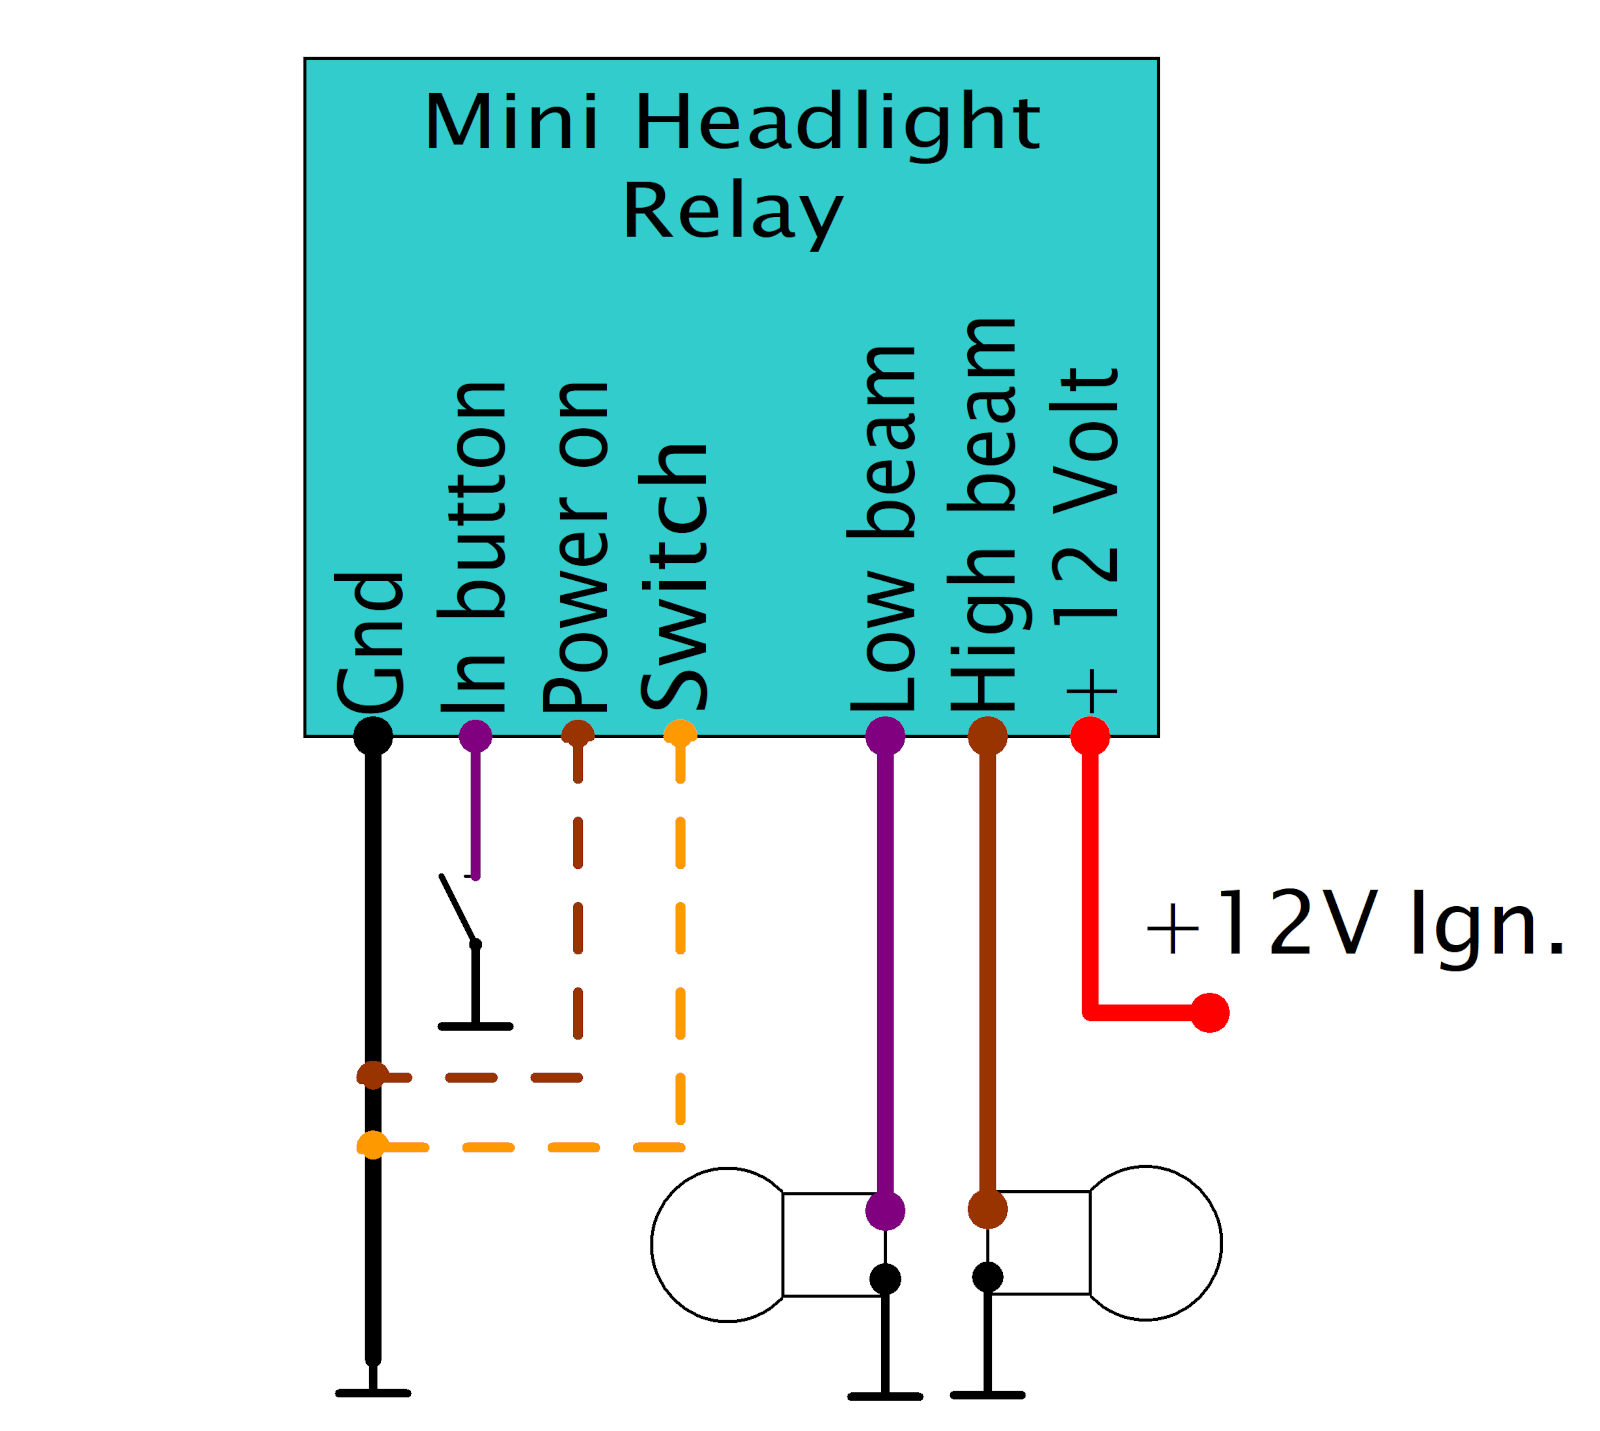 Mini Headlight Relay